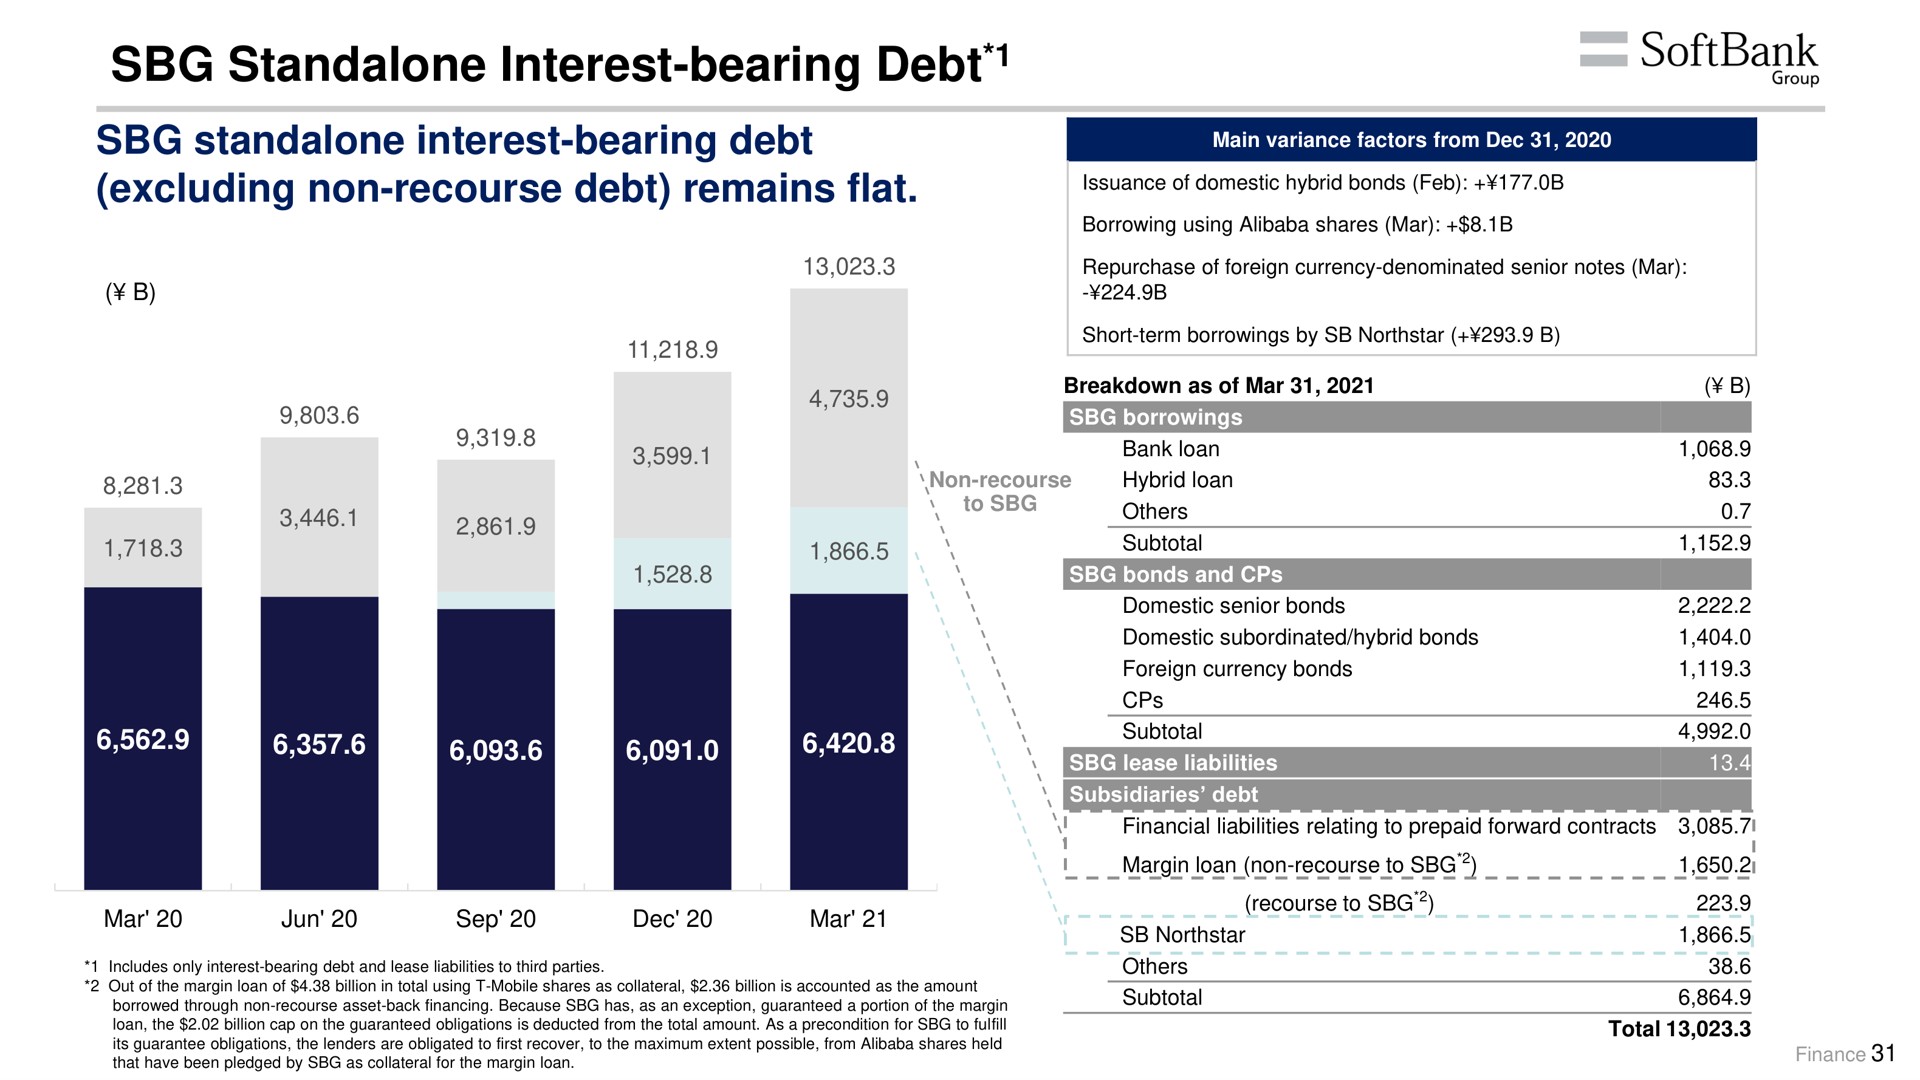 interest bearing debt interest bearing debt excluding non recourse debt remains flat | SoftBank